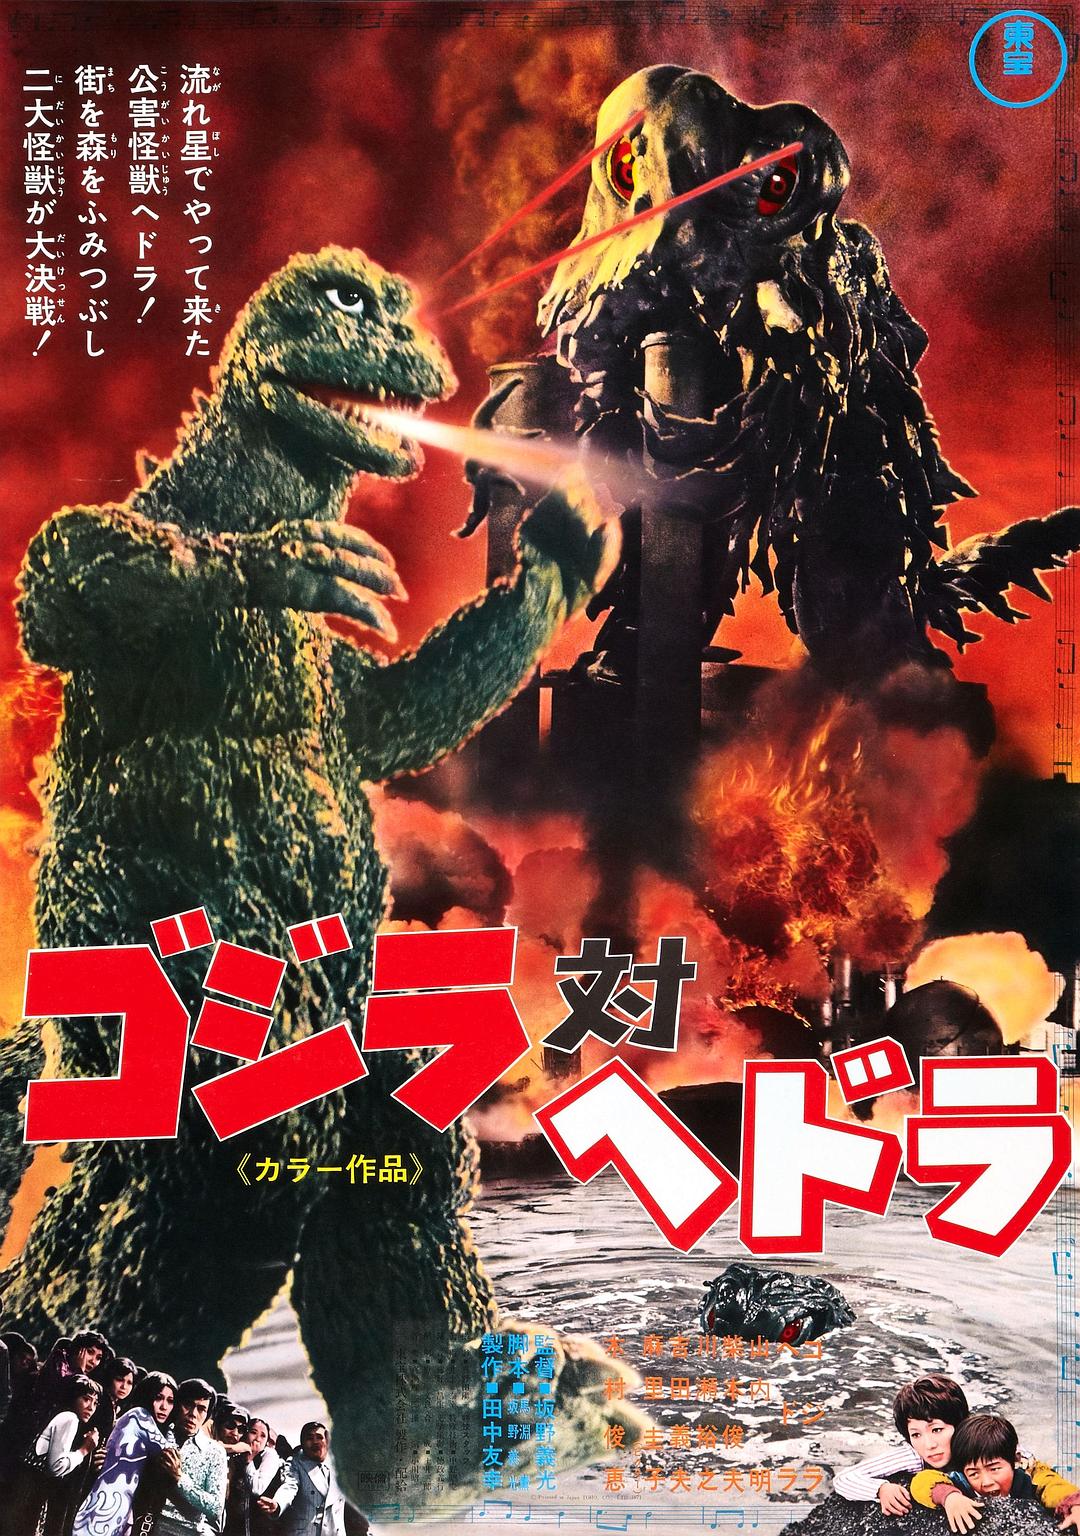 ˹Ժڶ Godzilla.Vs.Hedorah.1971.CRITERION.JAPANESE.1080p.BluRay.x264.DTS-FGT 8.-1.png